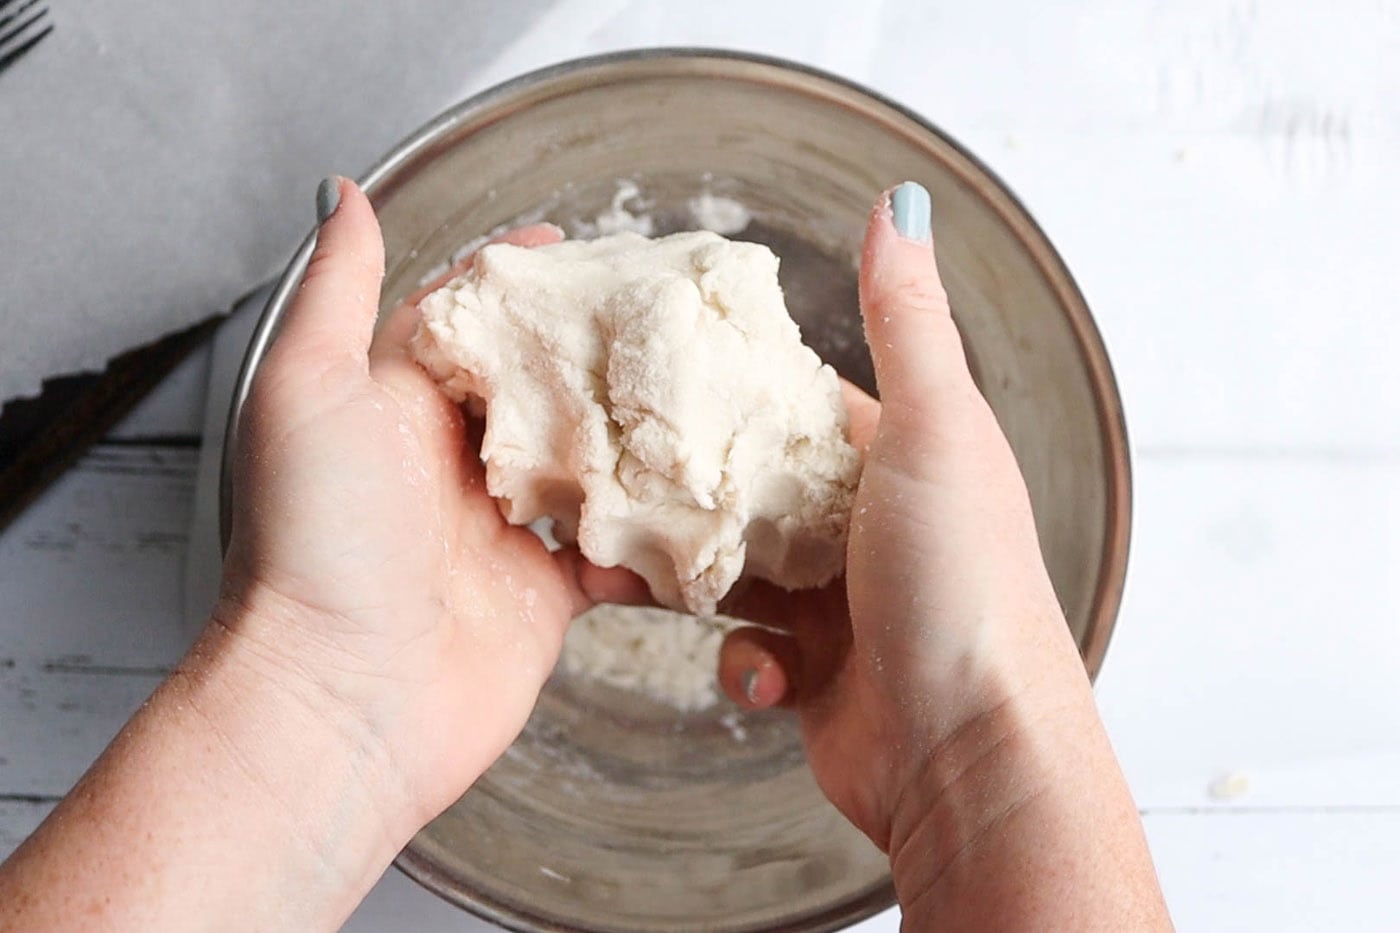 hands holding salt dough